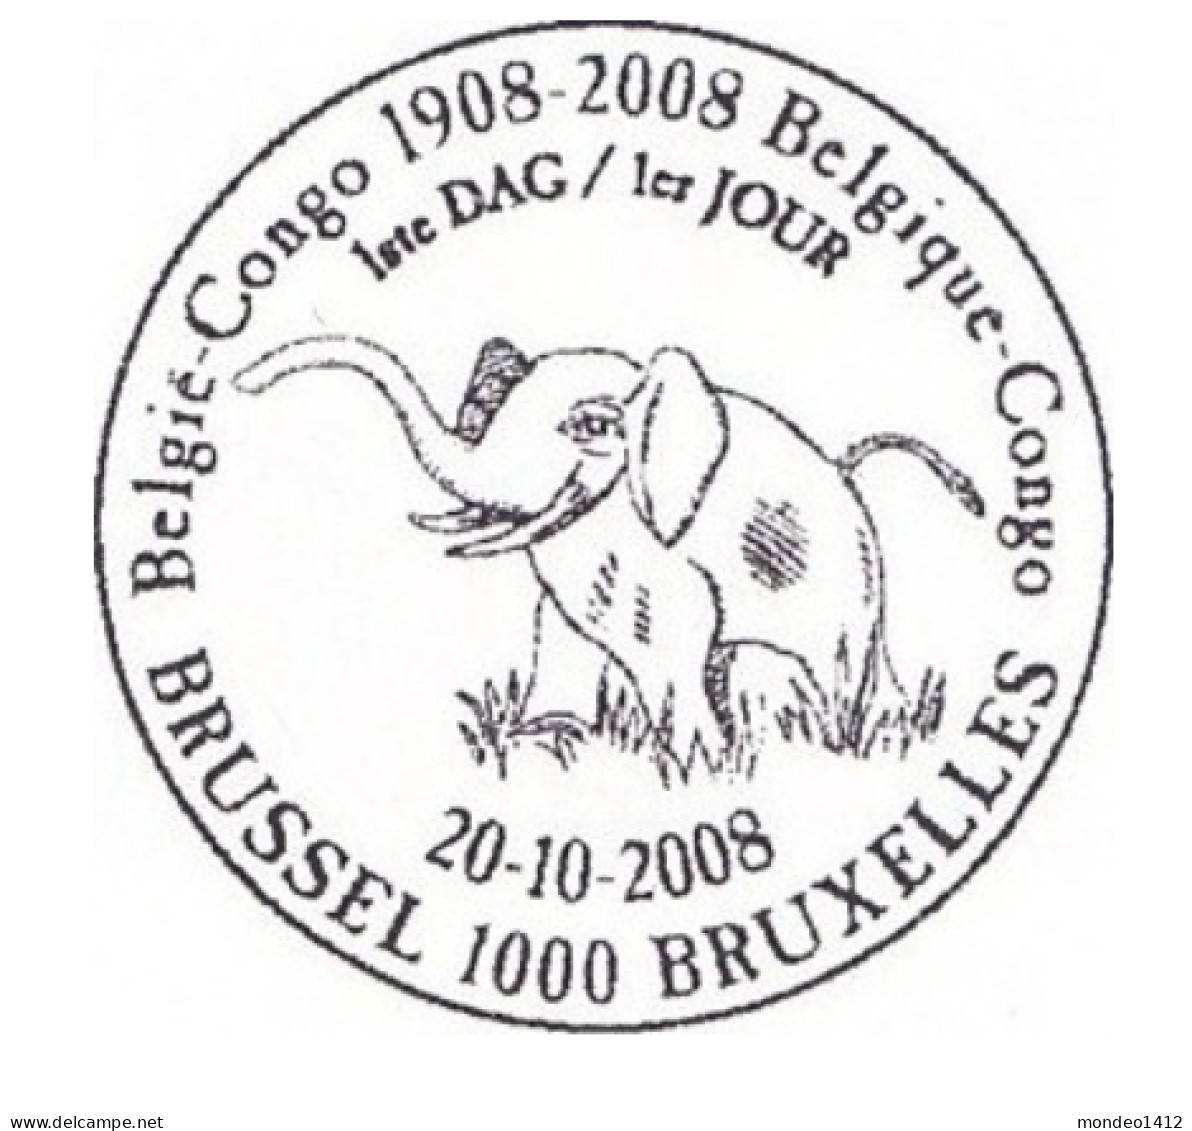 België OBP 3848 - Congo Belge - Gebruikt